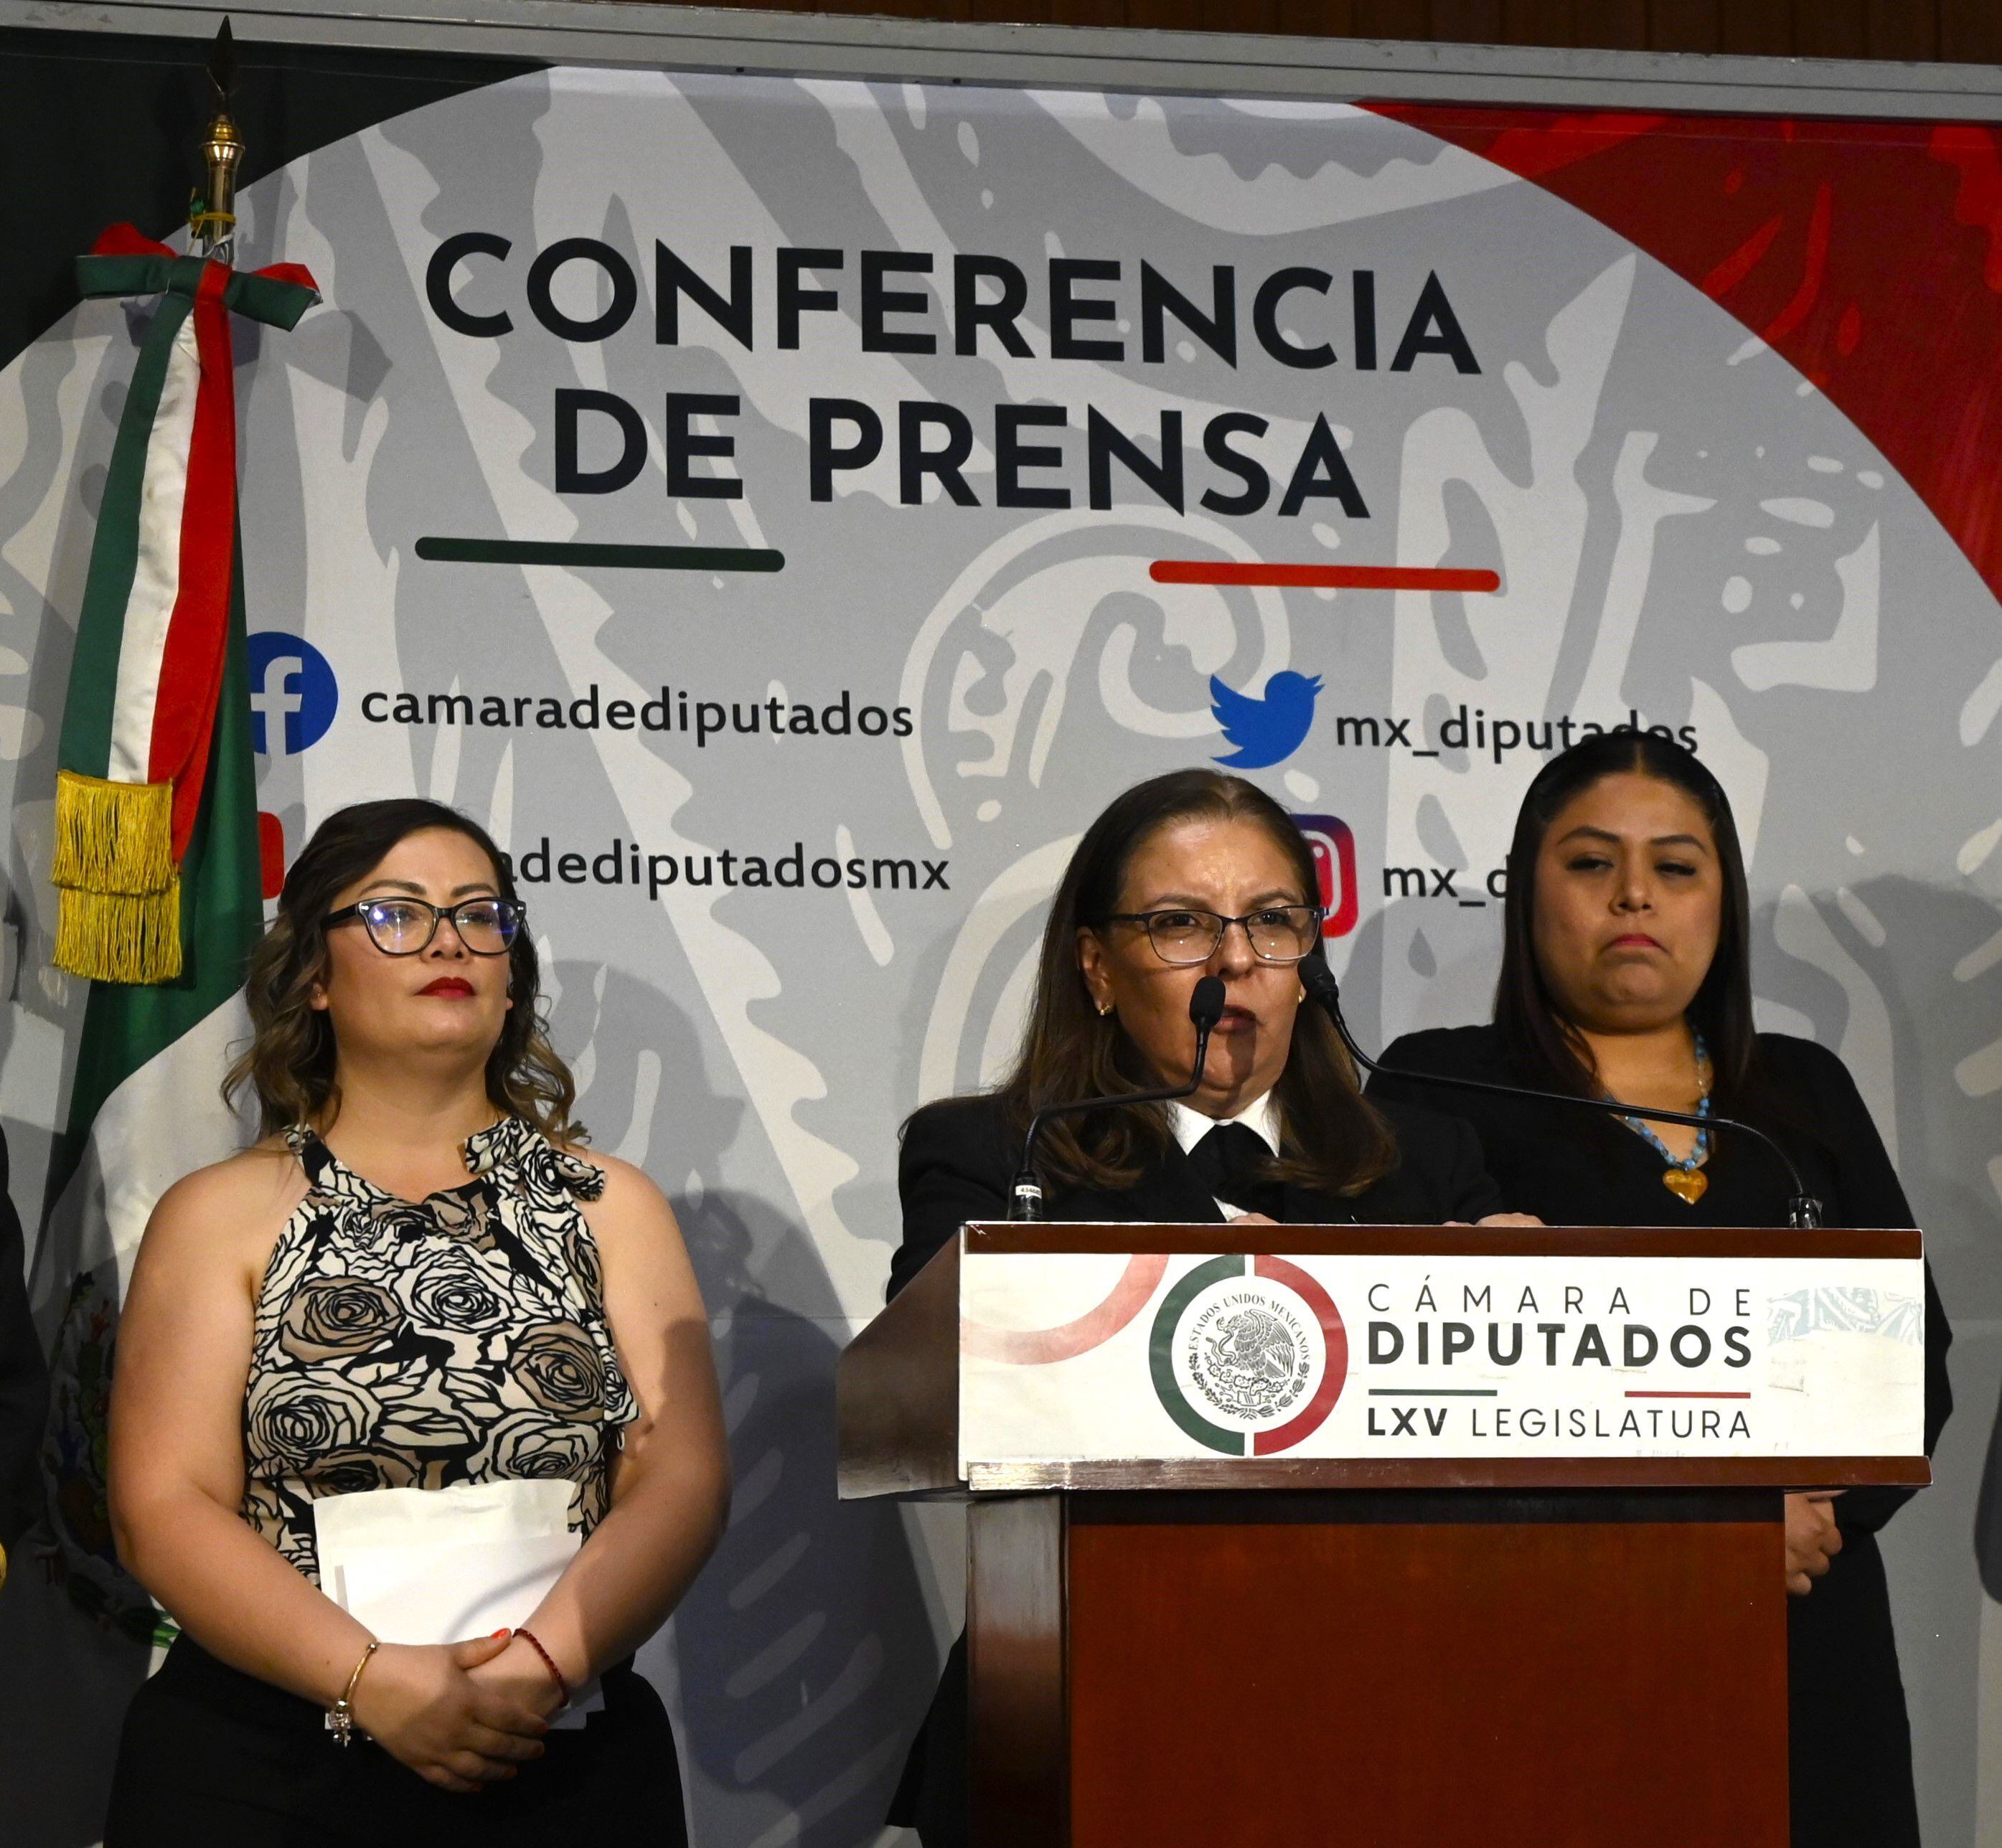 Conferencia de prensa de la diputada Julieta Vences Valencia y la piloto Martha Vera Araujo en la Cámara de Diputados